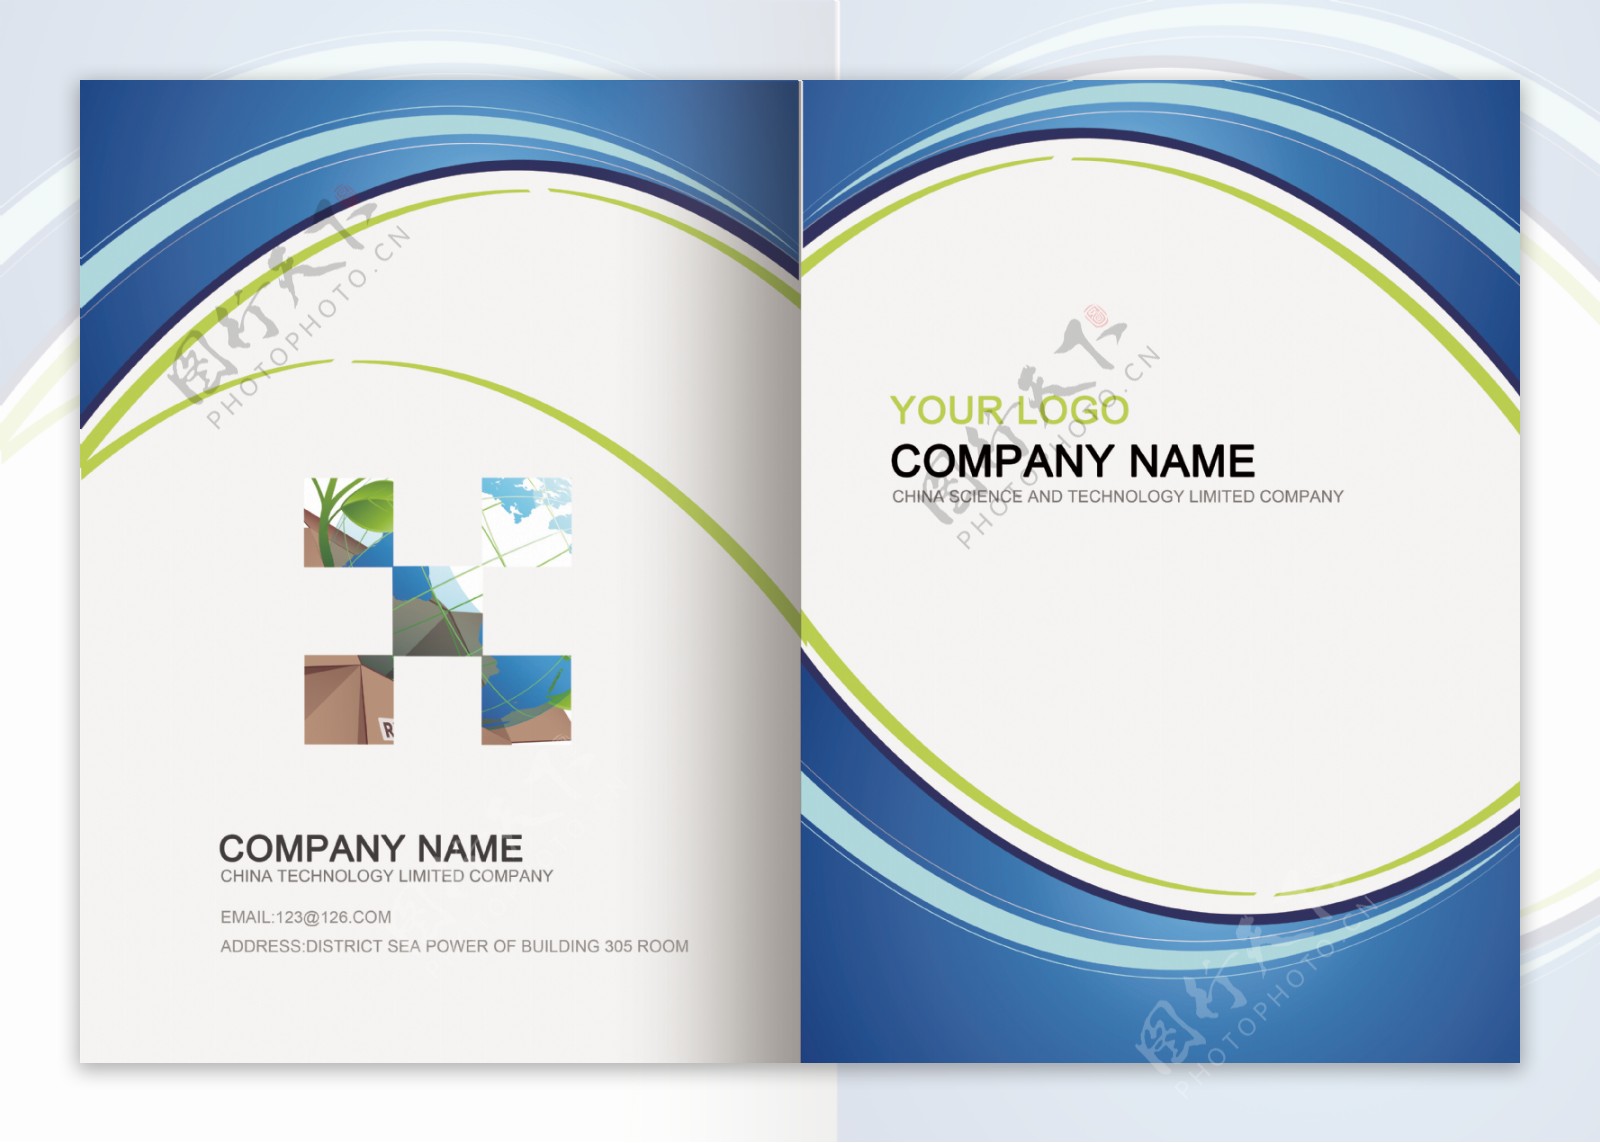 企业公司画册设计图片